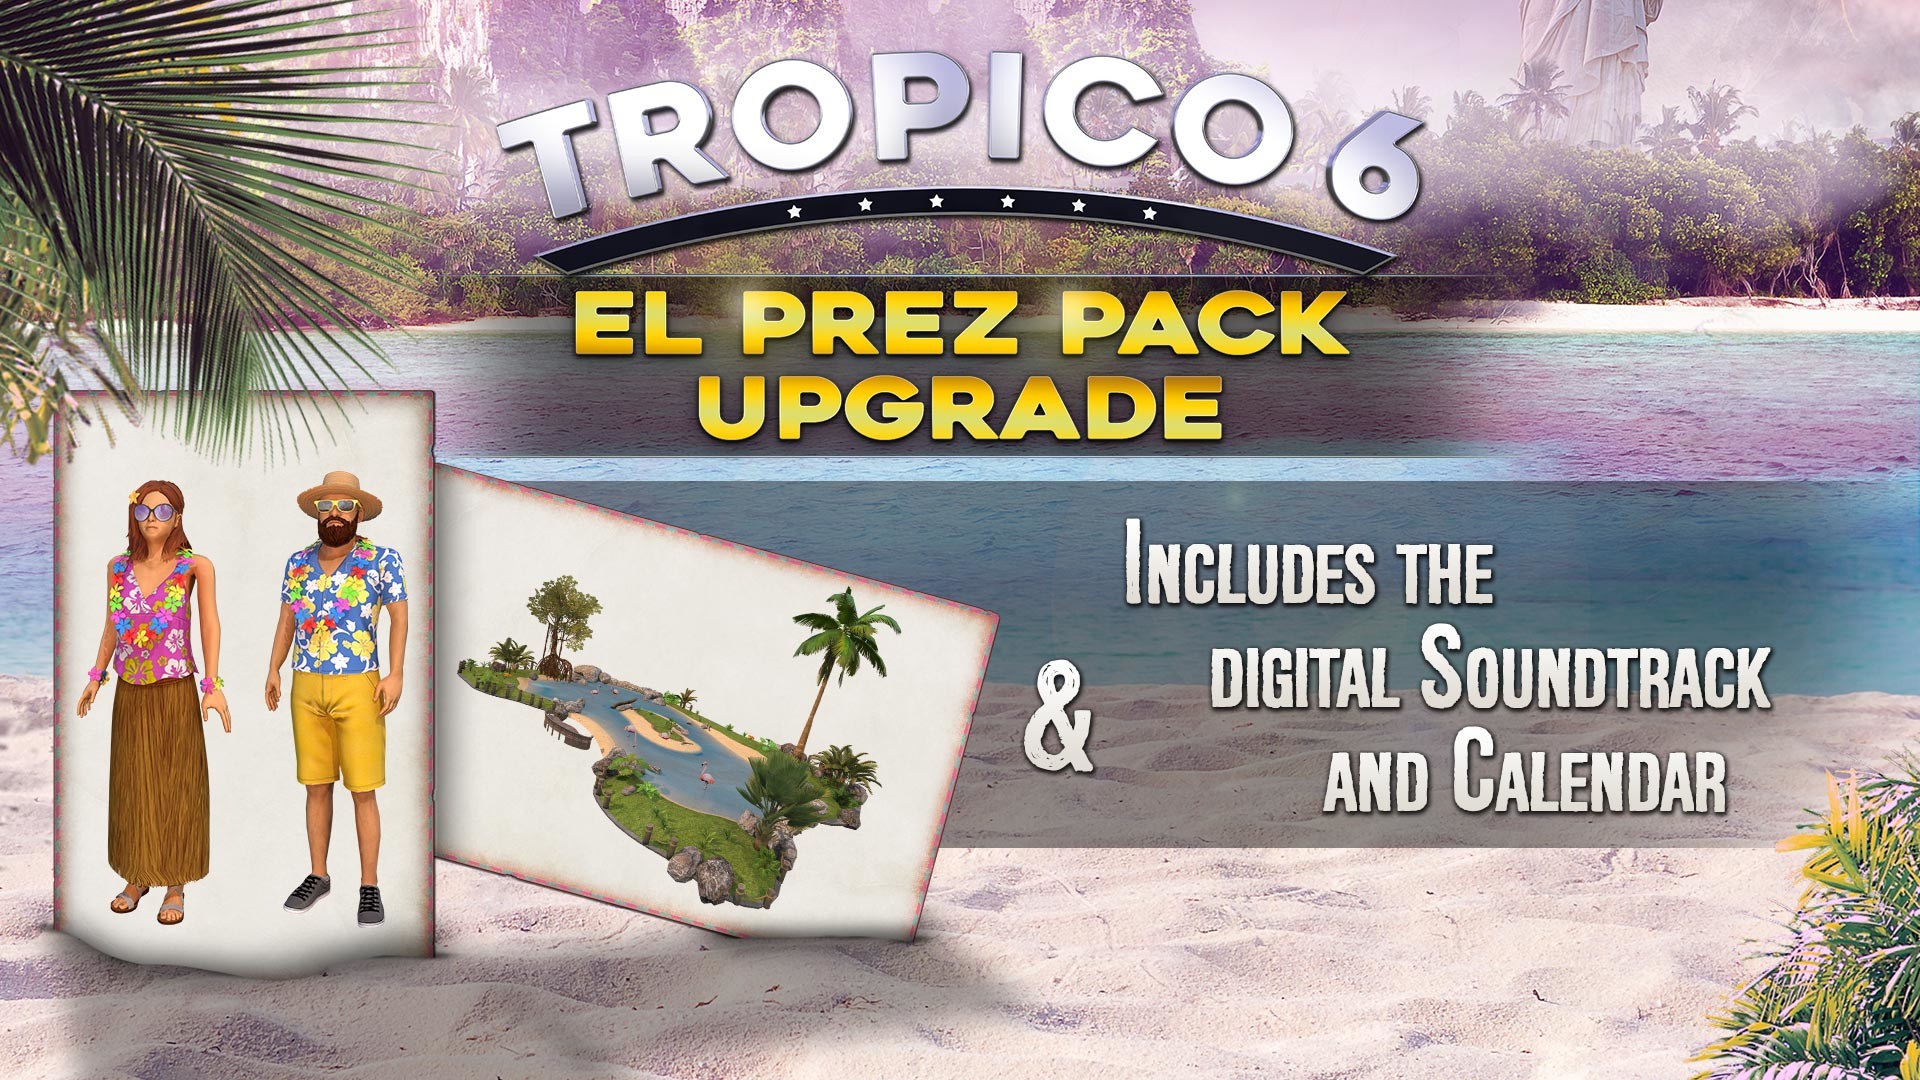 Tropico 6 - El Prez Edition Upgrade Featured Screenshot #1